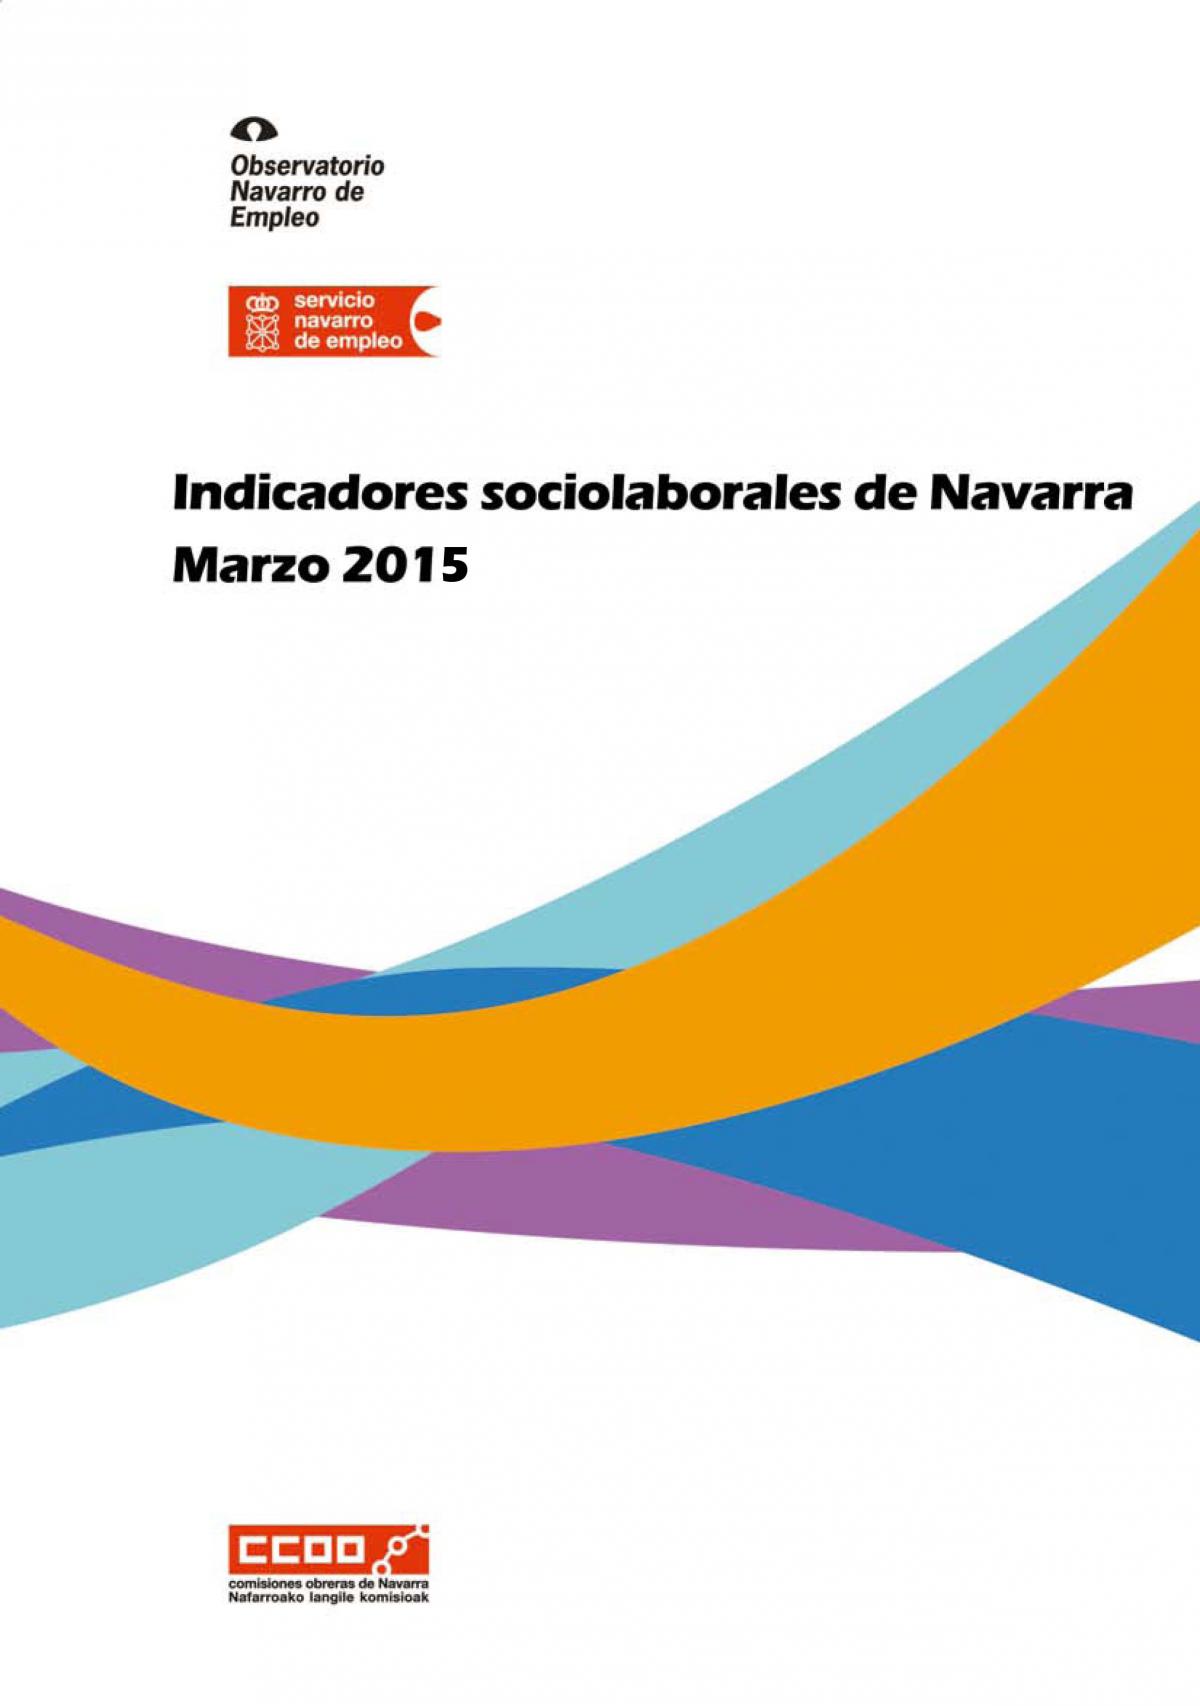 Indicadores sociolaborales de Navarra marzo 2015